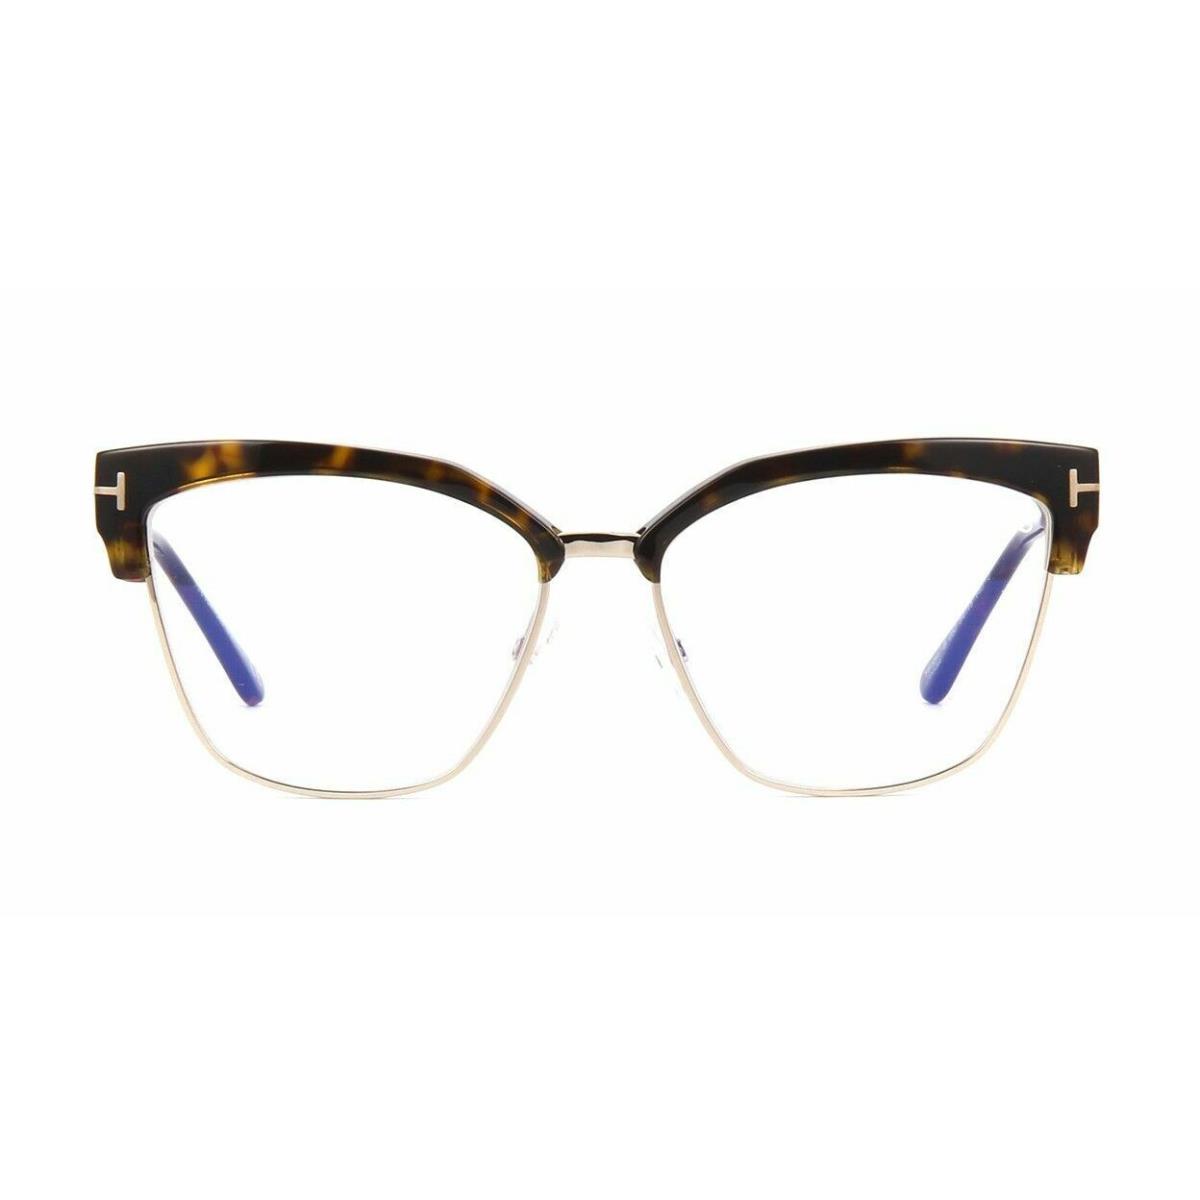 Tom Ford FT 5547-B 052 Eyeglasses Havana Frame 54mm